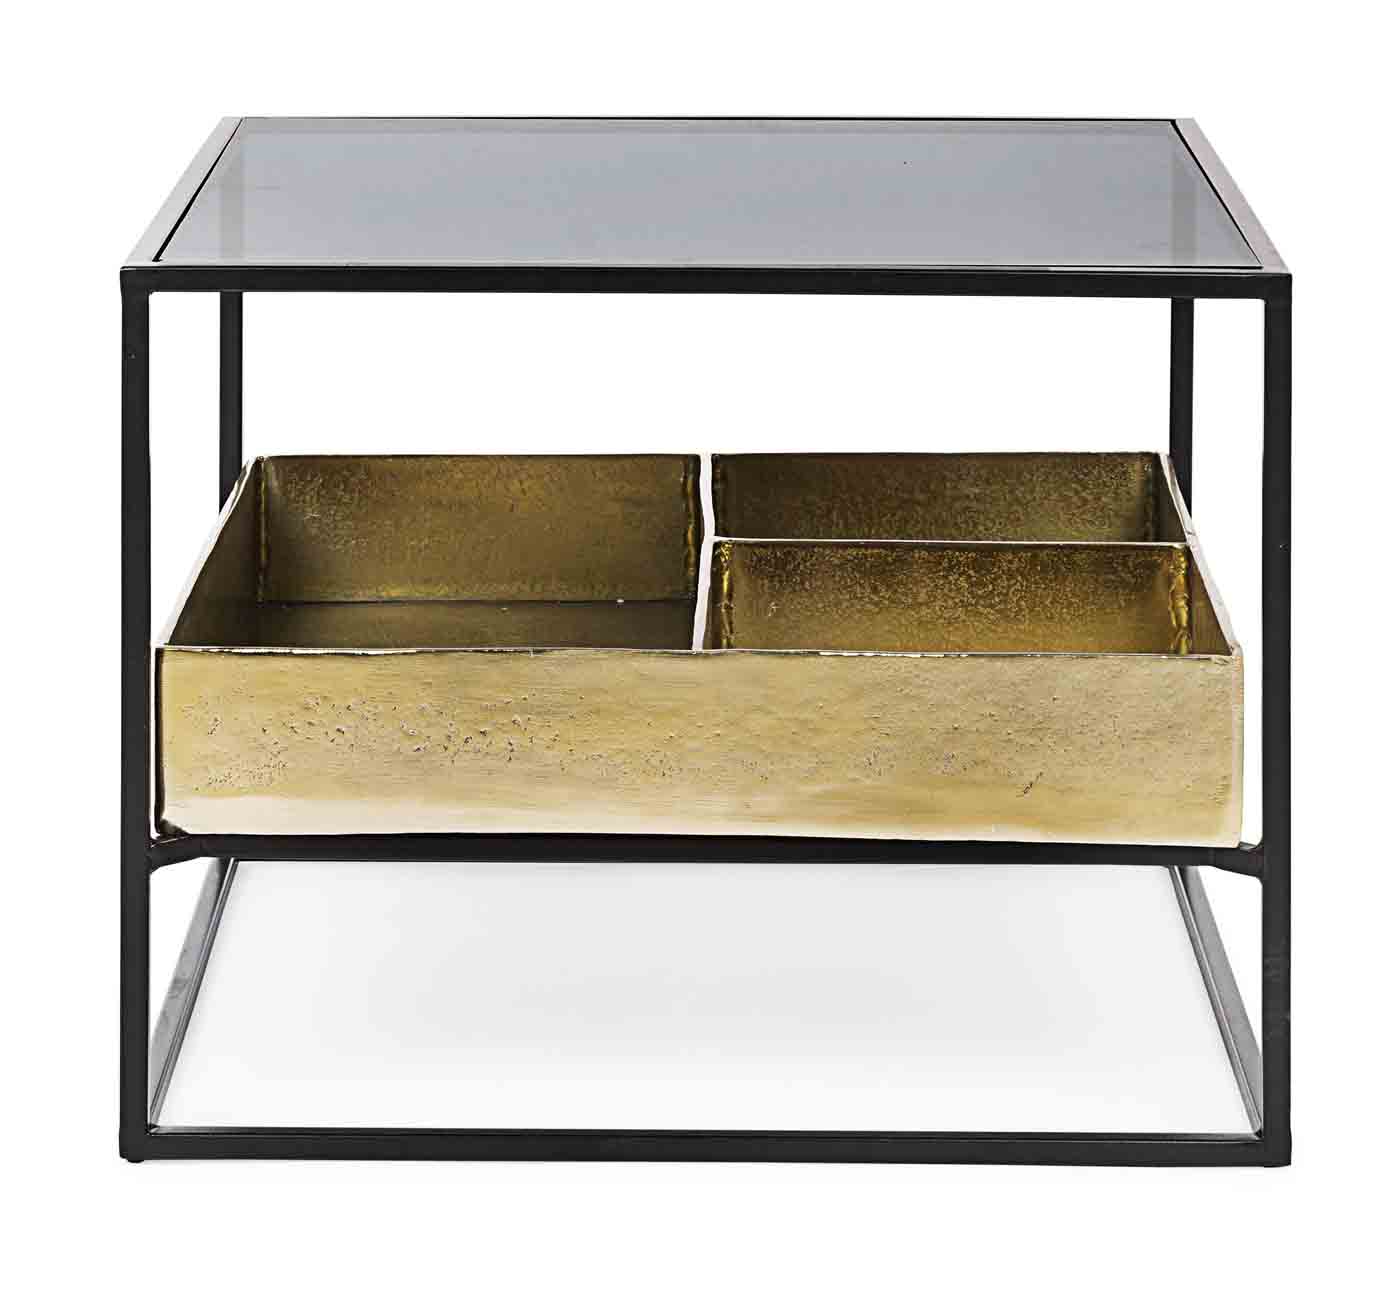 Stilvoller Beistelltischtisch Mavila verfügt über ein Stahlgestell, die Oberfläche ist aus Glas und der Tisch besitzt eine Unterplatte welche vergoldet wurde.